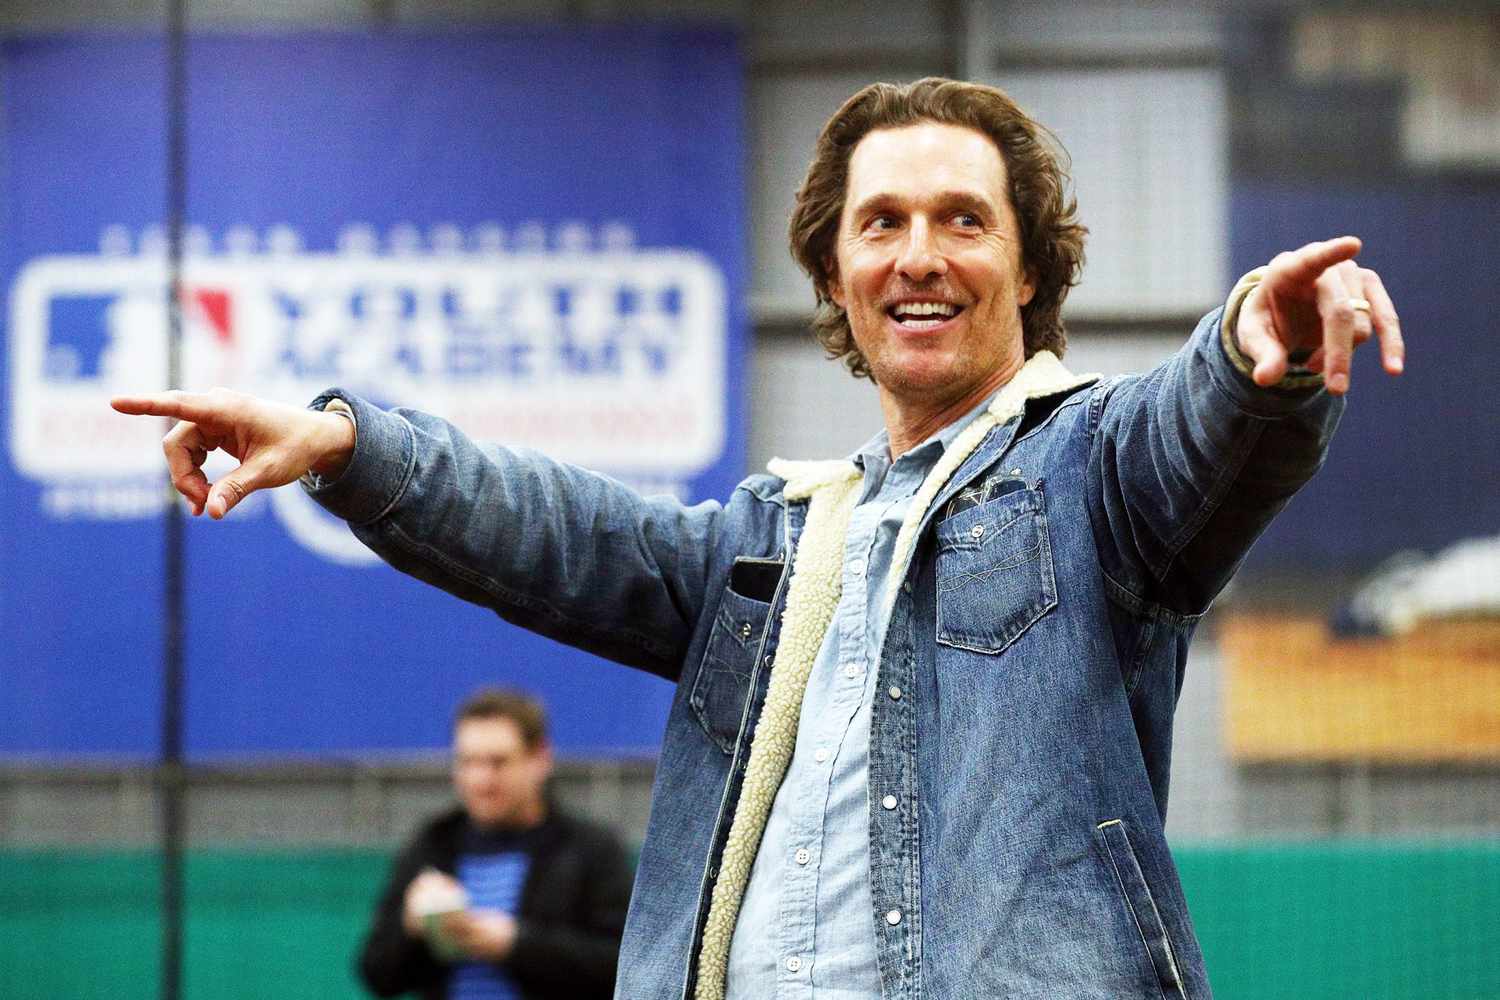 BESTPIX - Matthew McConaughey Attends Rangers Play Ball Event